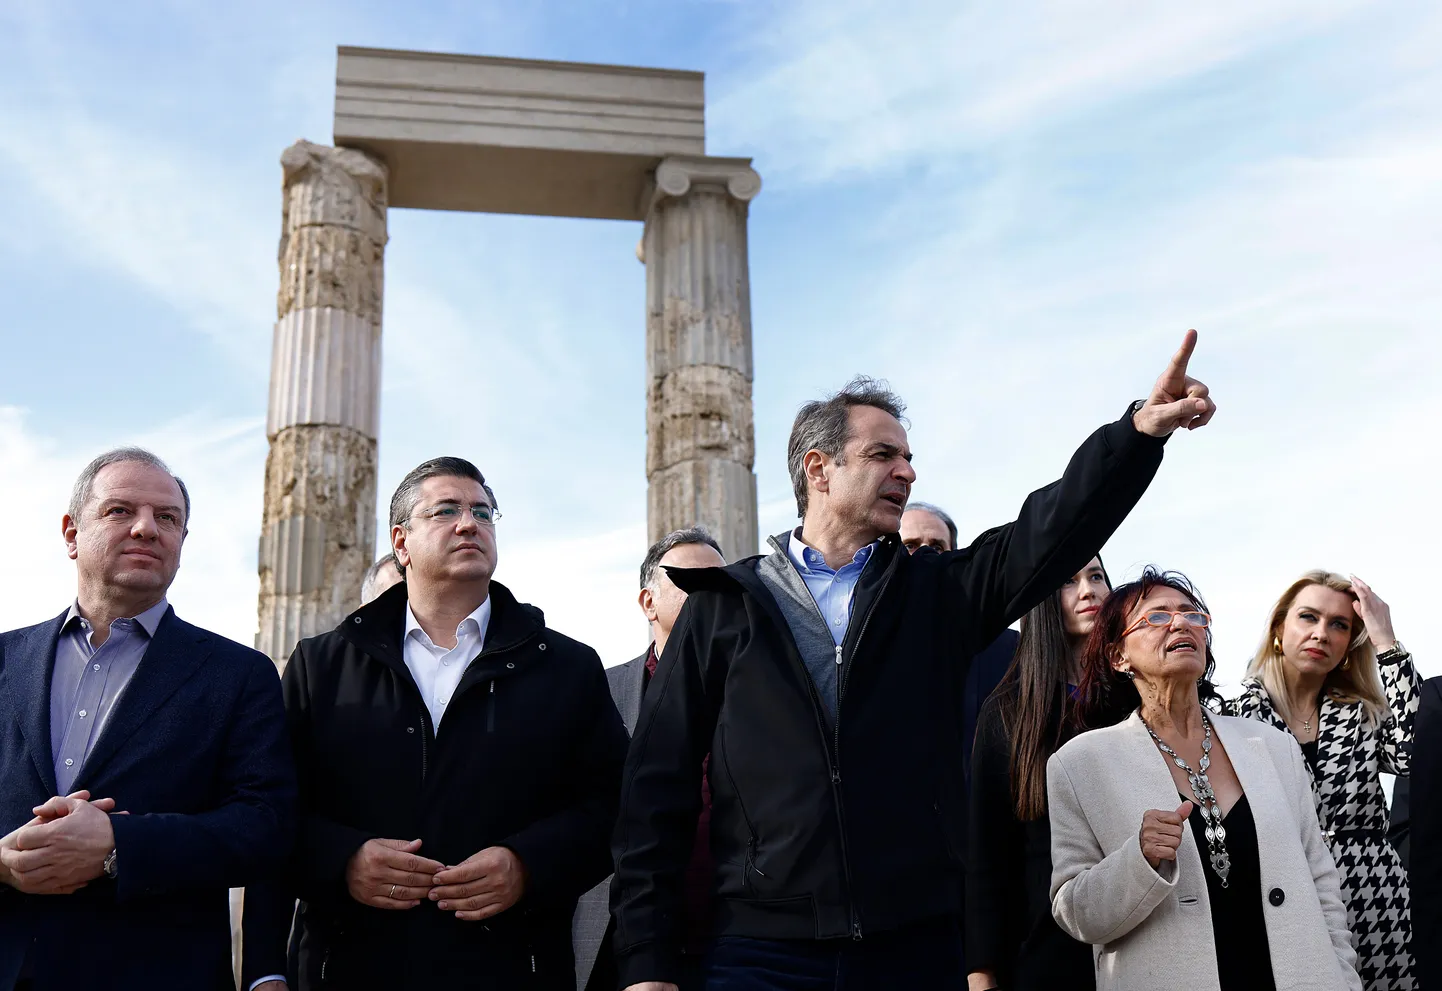 Kreeka peaminister Kyriakos Mitsotakis Aigai palee avamistseremoonial. Kõigile soovijatele avaneb antiikaja kuulus maamärk pühapäeval.